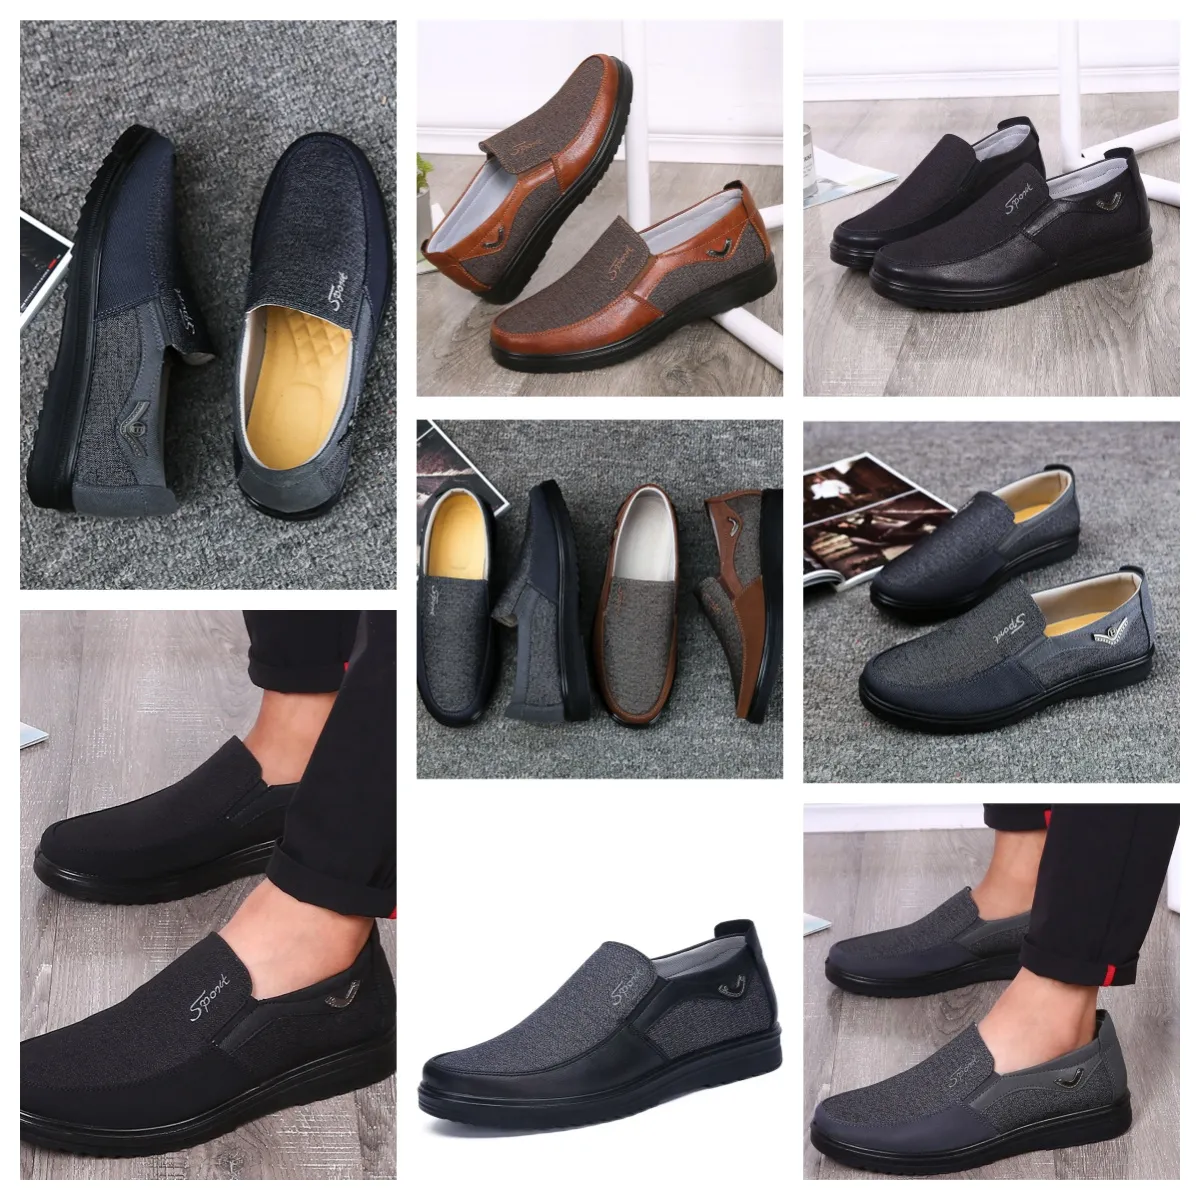 Gai Comfort Erkek Ayakkabı Siyah Ayakkabı Yuvarlak Ayakkabı Parti Açık Ziyafetler Erkek İş Topuk Tasarımcı Ayakkabı Eur 38-50 Yumuşak